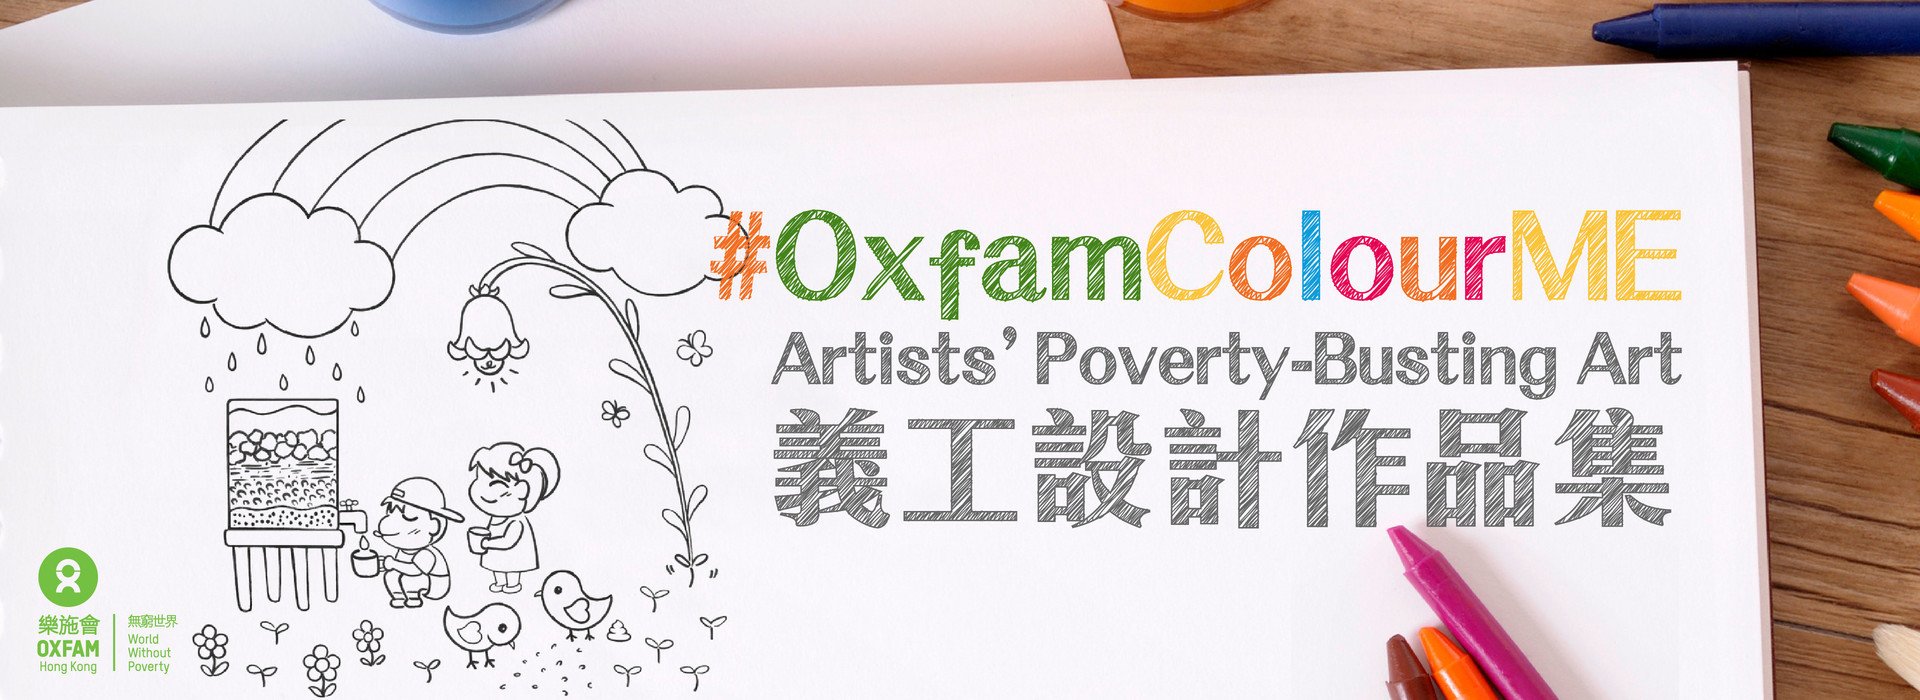 Oxfam Colour ME